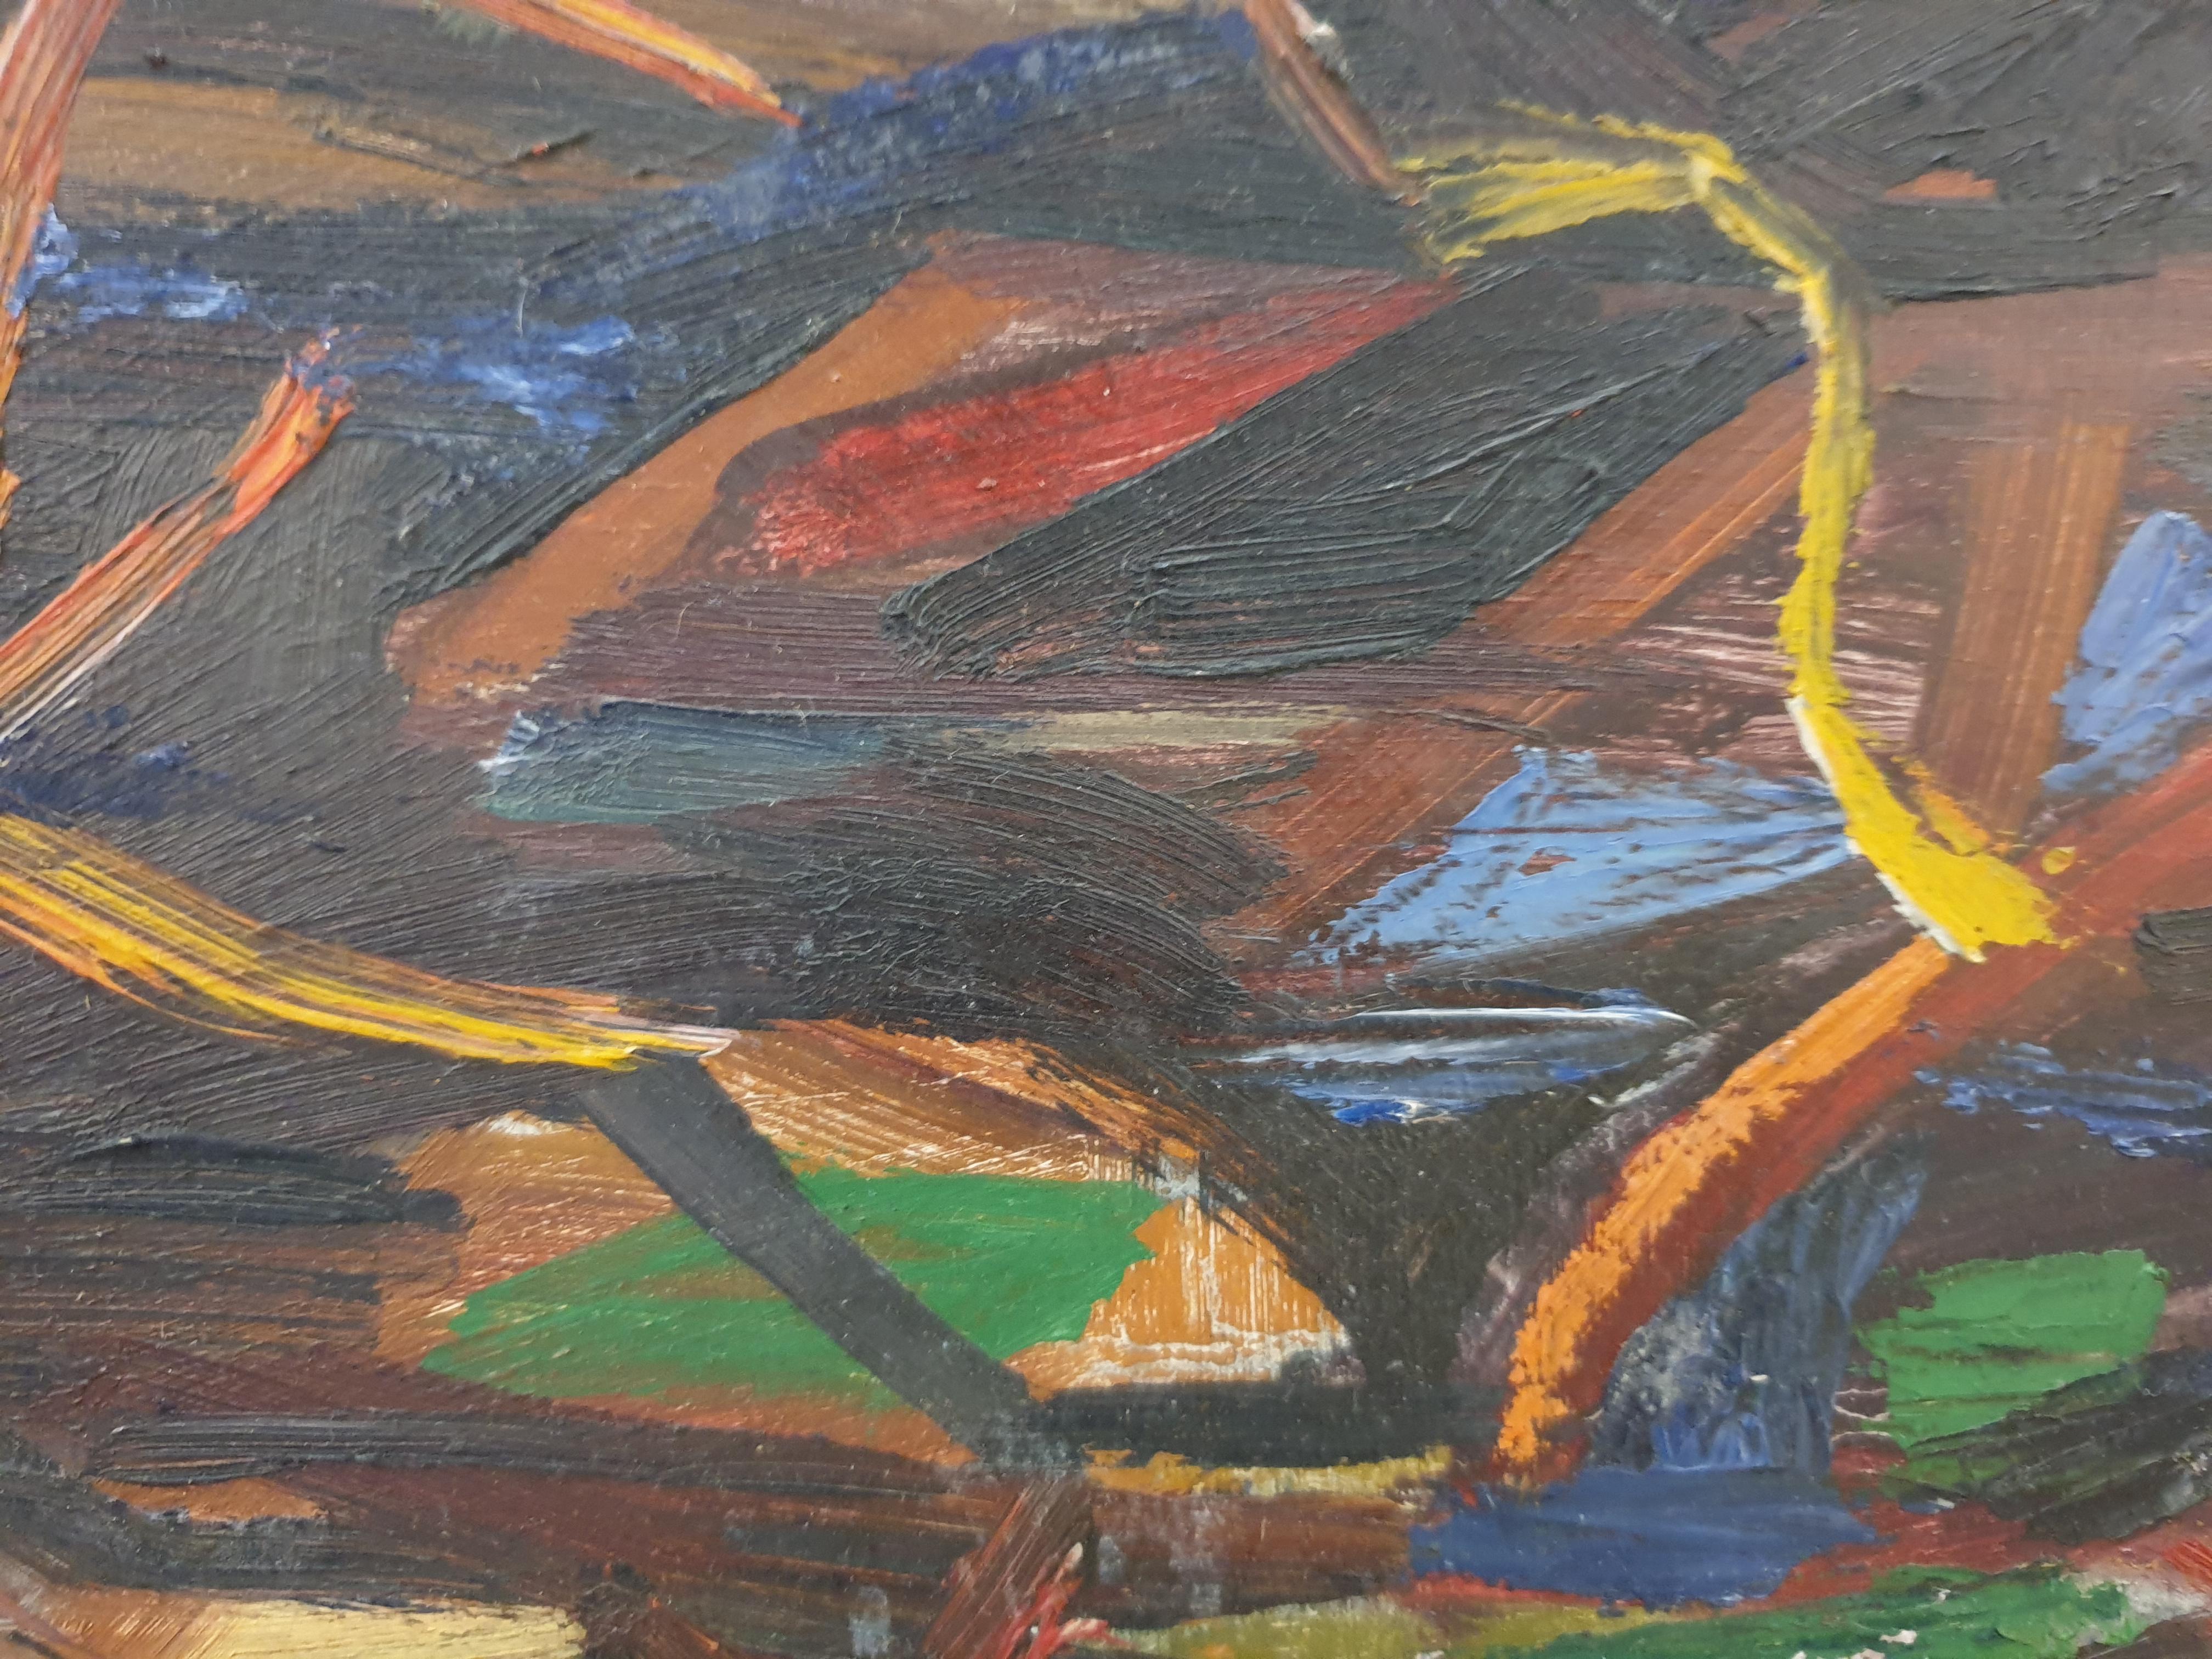 Öl auf Karton des Künstlers Ahlan Achoy aus der Mitte des 20. Jahrhunderts, signiert unten links.

Ahlan Achoy war bekannt für seine figurative Kunst und seine Porträts, die oft im kubistischen Stil gehalten sind. Dieses farbenfrohe abstrakte